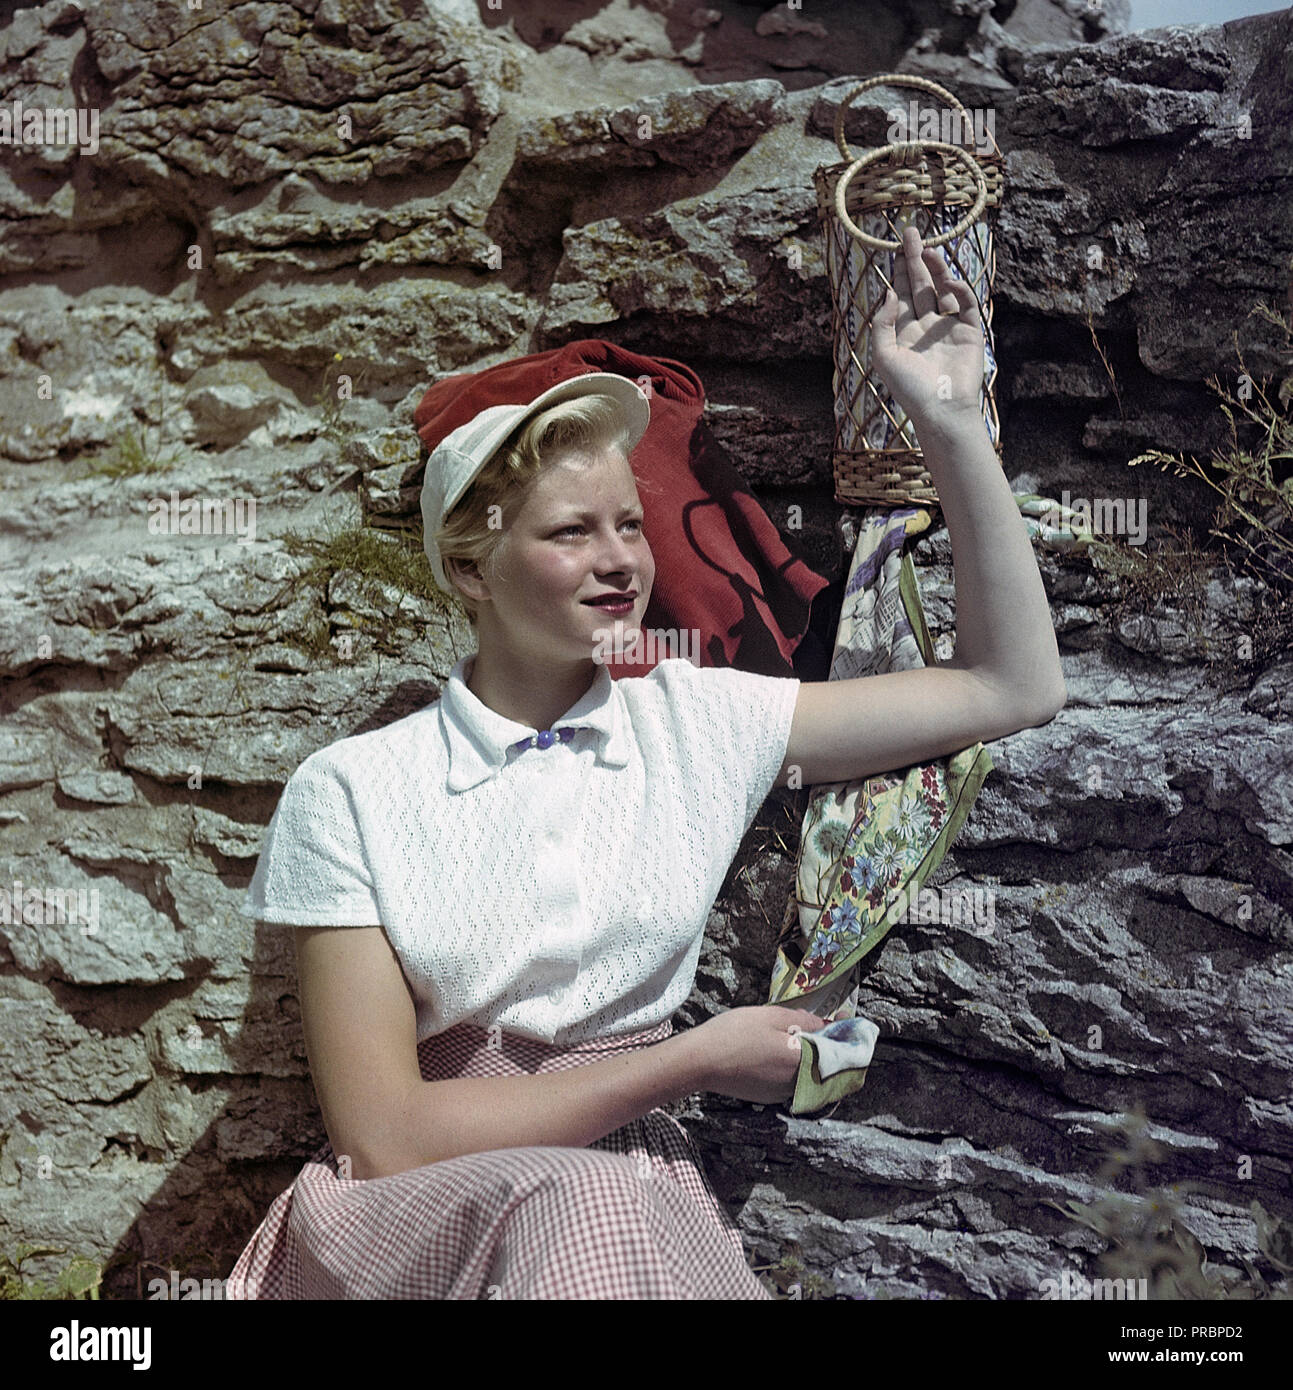 La mode des années 1950. Une jeune femme porte un chemisier blanc et un chapeau assorti. La Suède des années 1950. Ref BV88-2 Banque D'Images